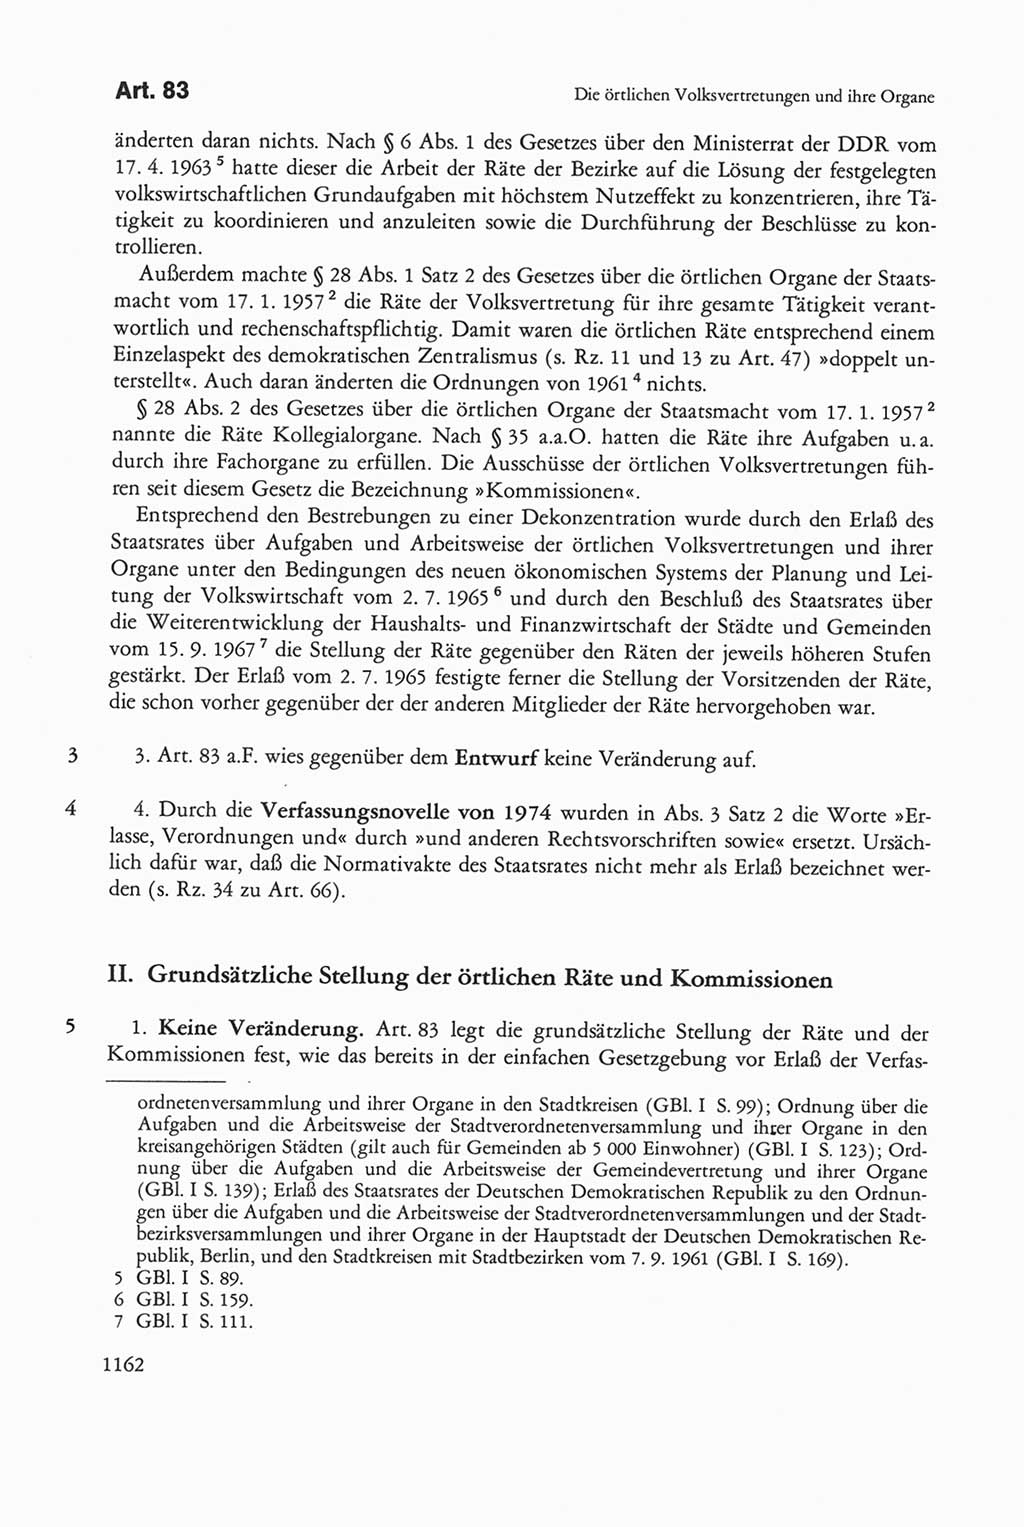 Die sozialistische Verfassung der Deutschen Demokratischen Republik (DDR), Kommentar mit einem Nachtrag 1997, Seite 1162 (Soz. Verf. DDR Komm. Nachtr. 1997, S. 1162)